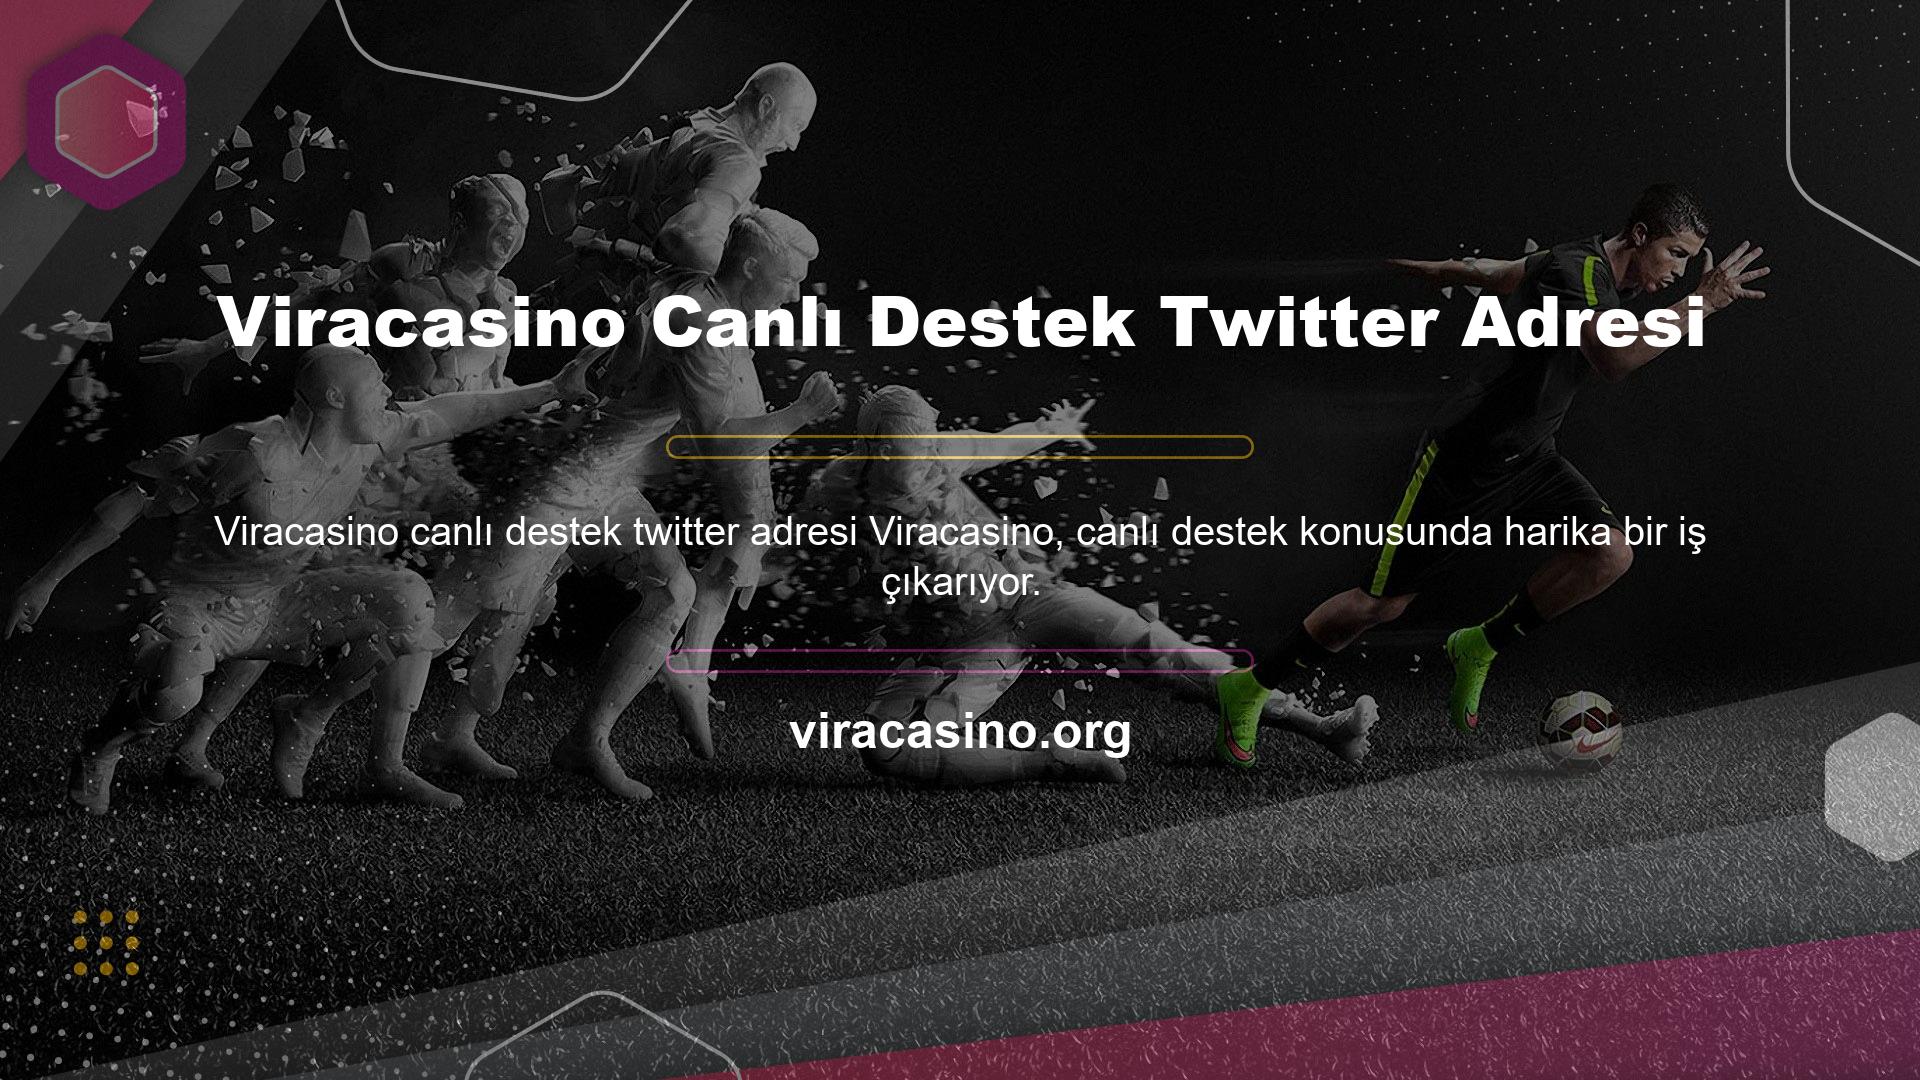 Bunun en güzel örneklerinden birini Viracasino Canlı Destek Canlı Destek Saatleri Twitter adres linki üzerinden görebilirsiniz, çünkü katılımcı siteler 7/24 proaktif iletişim desteği sağlamaktadır